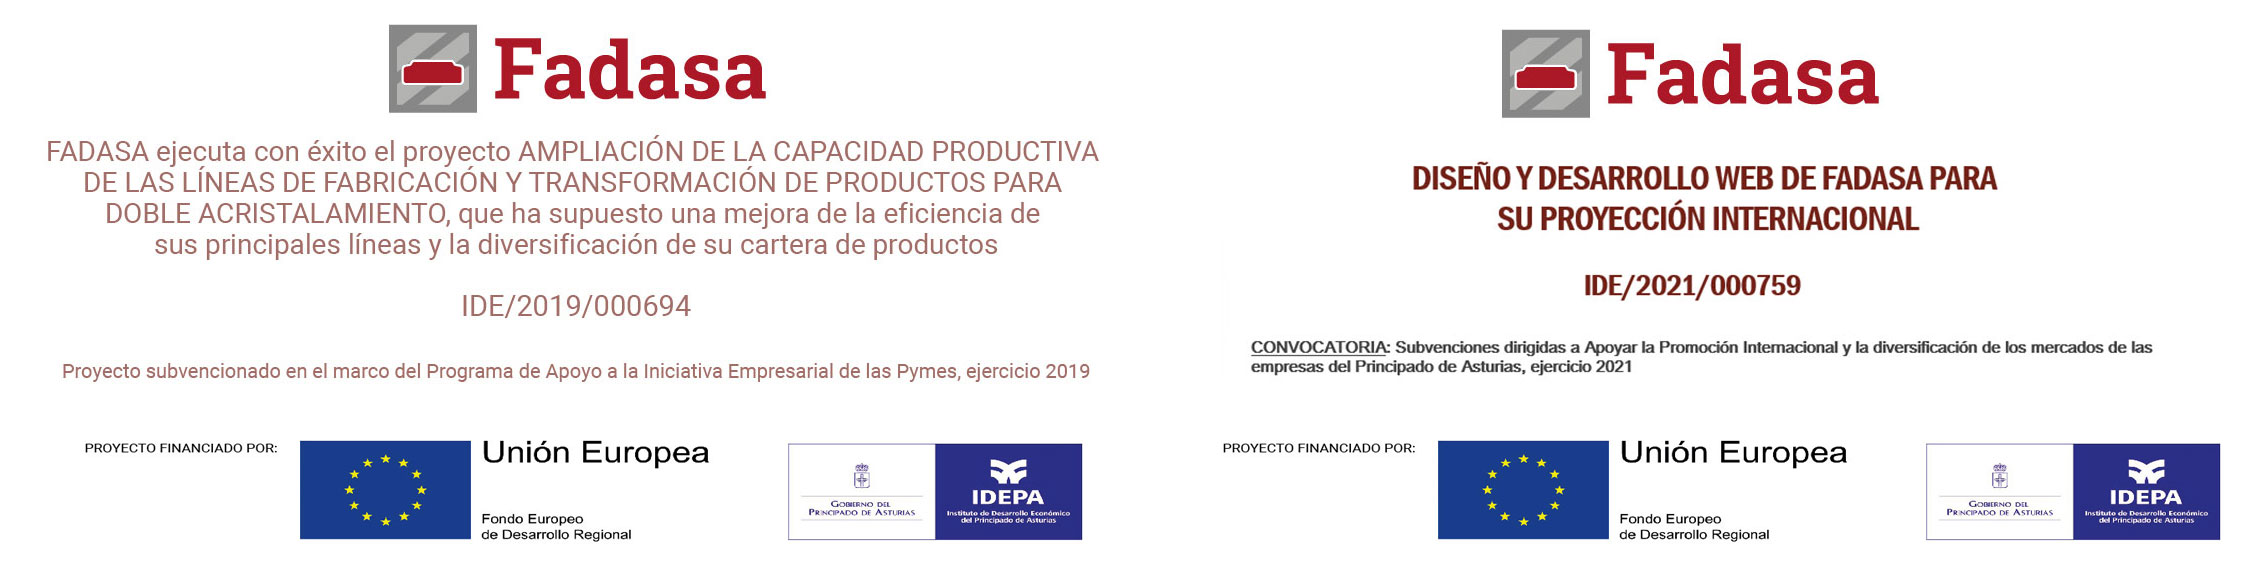 Proyecto subvencionado en el marco del Programa de Apoyo a la Iniciativa Empresarial de as Pymes, ejercicio 2019